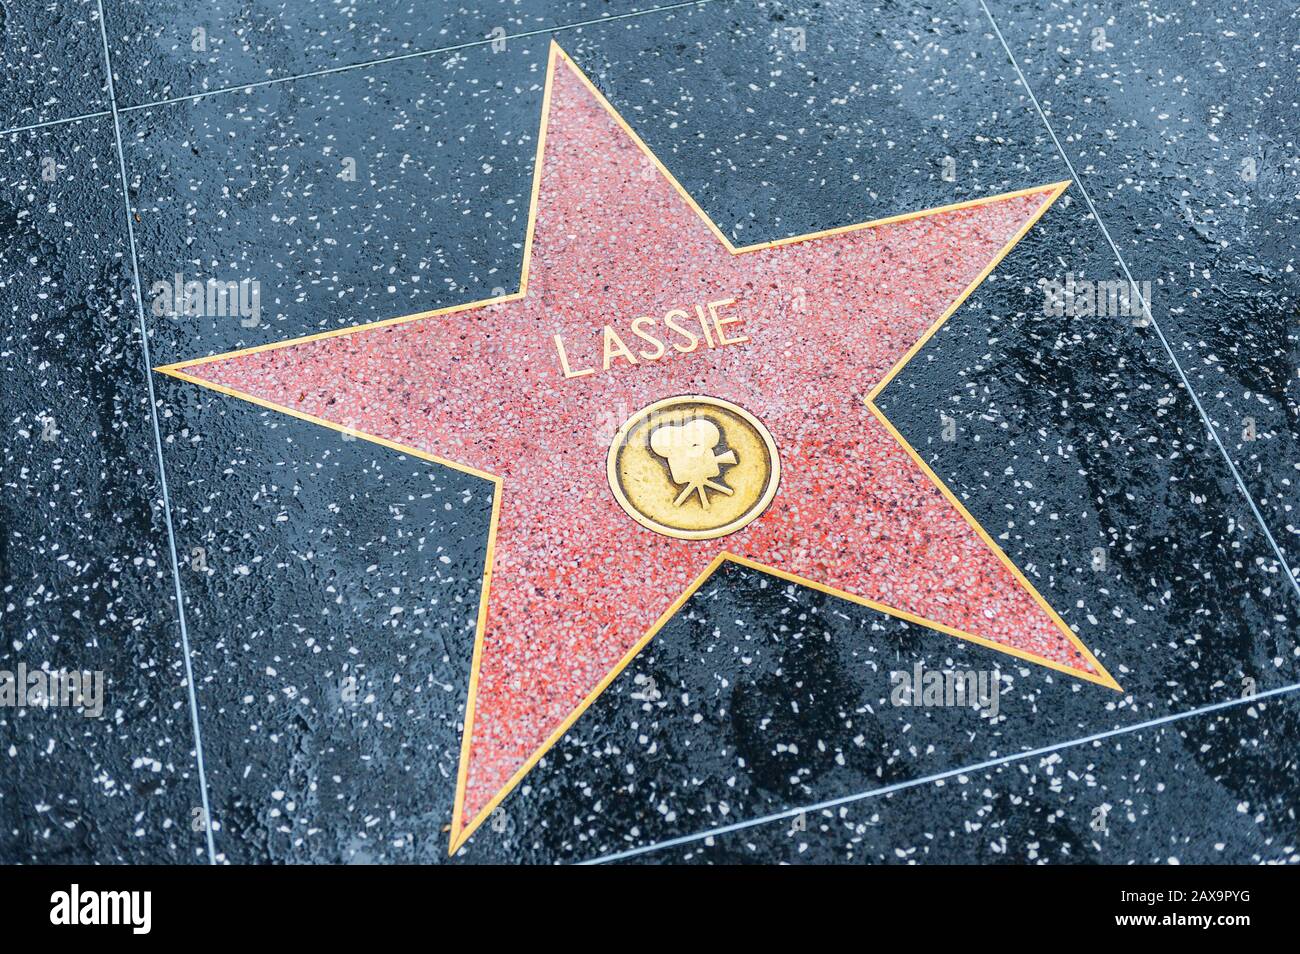 Lassie estrella en El Paseo de la Fama de Hollywood en Hollywood, California, Estados Unidos. Lassie era un perro de la collie áspero de la mujer ficticia. Foto de stock